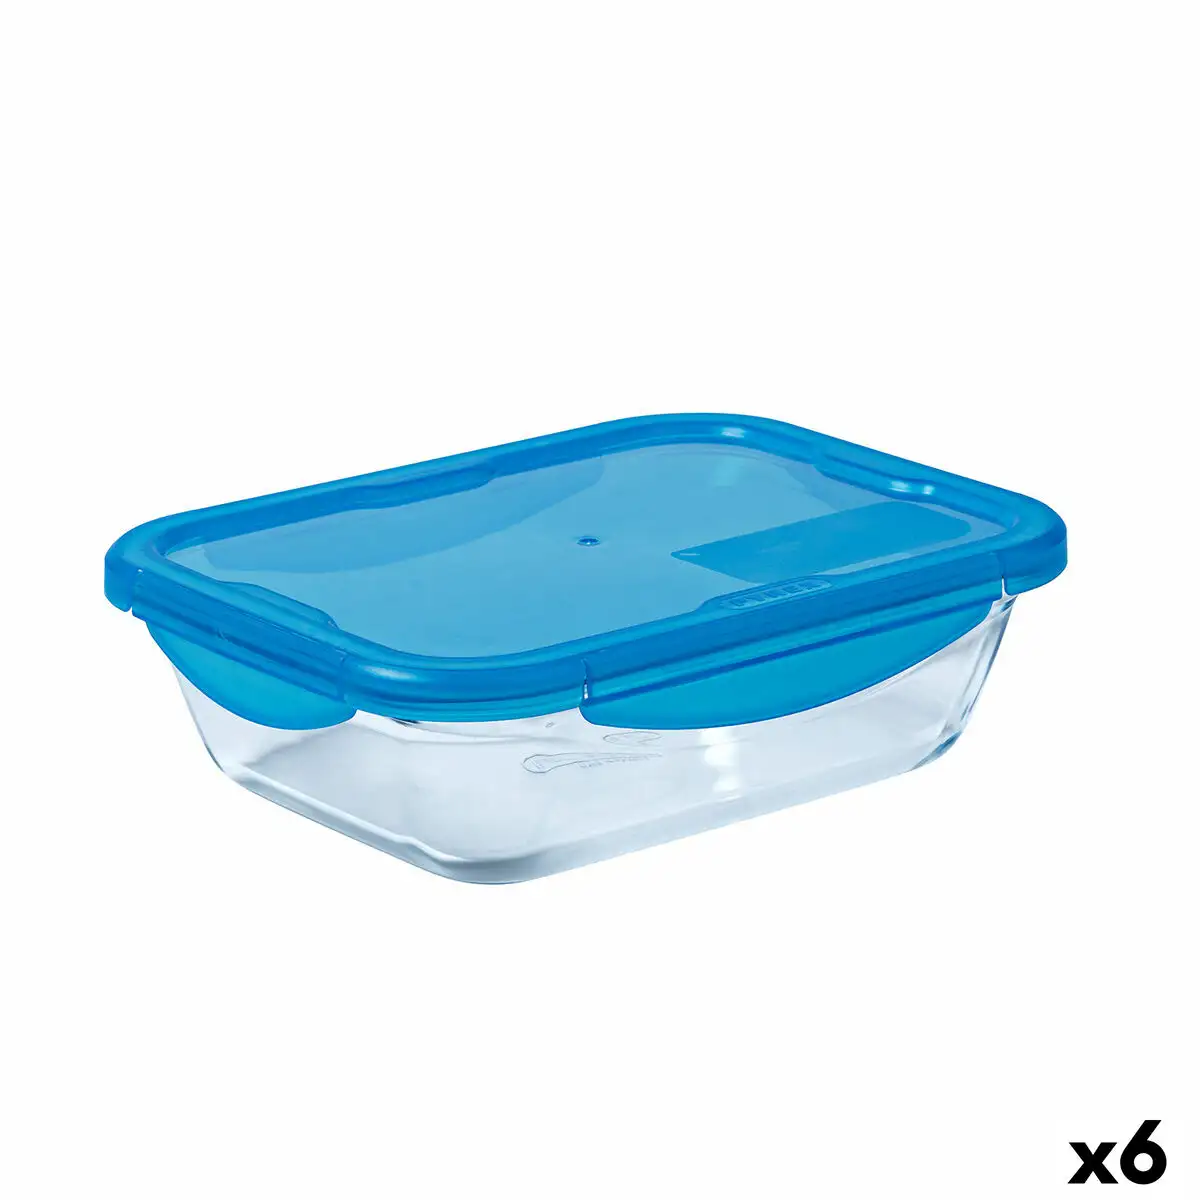 Lunch box herme tique pyrex cook go verre bleu 800 ml 6 unite s_8074. DIAYTAR SENEGAL - L'Art du Shopping Facilité. Naviguez sur notre plateforme en ligne pour découvrir une expérience d'achat fluide et agréable, avec une gamme de produits adaptés à tous.